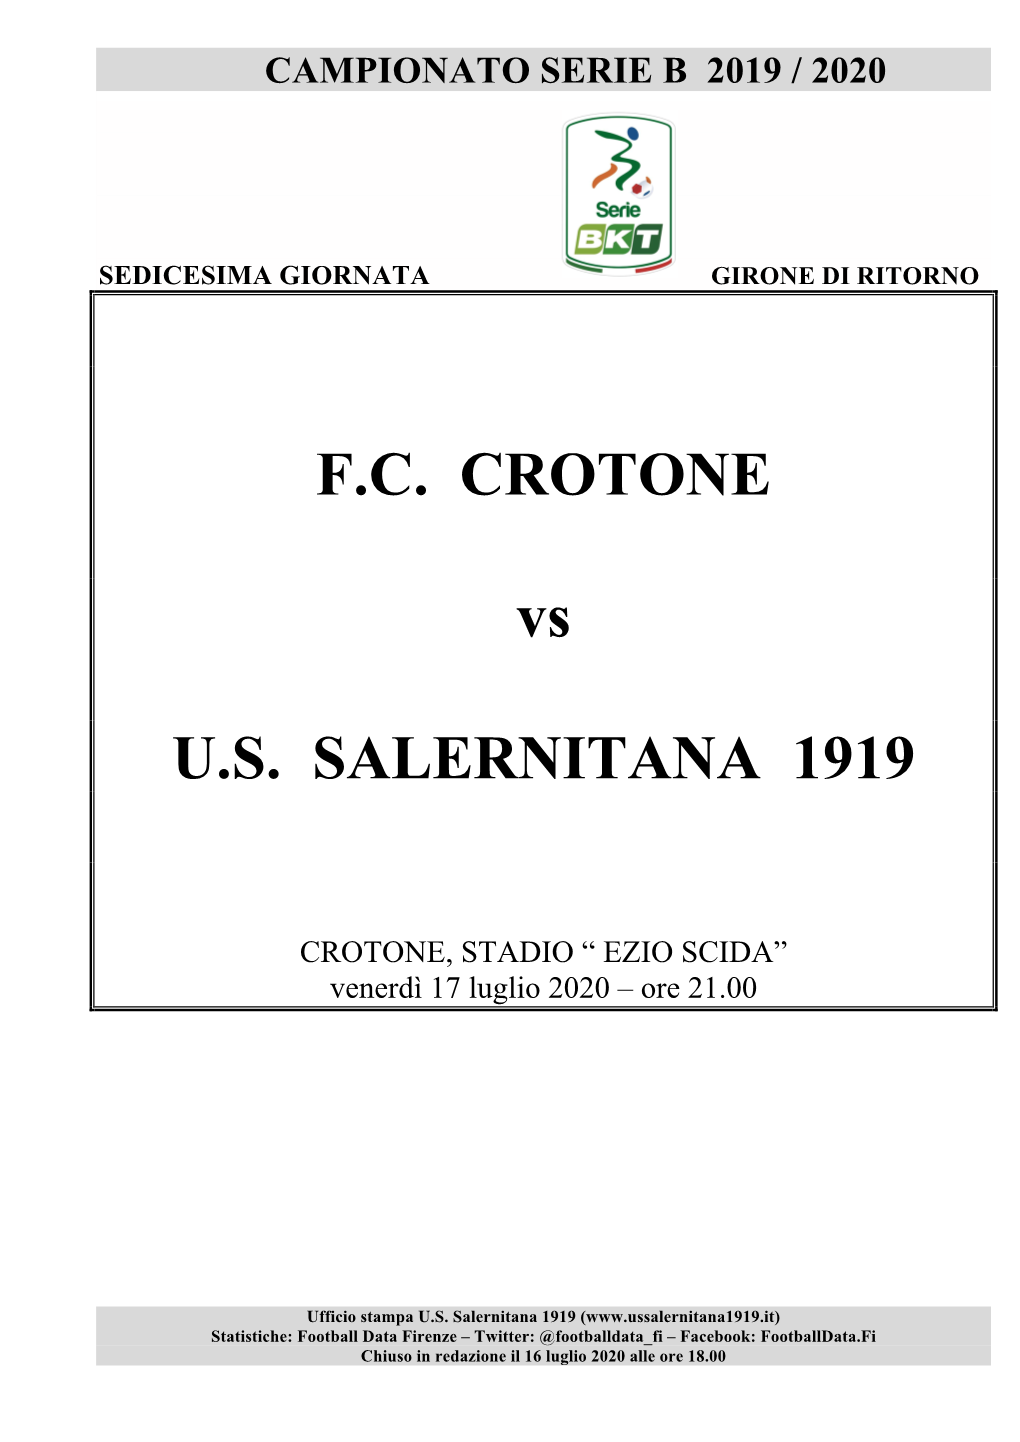 Crotone-Salernitana